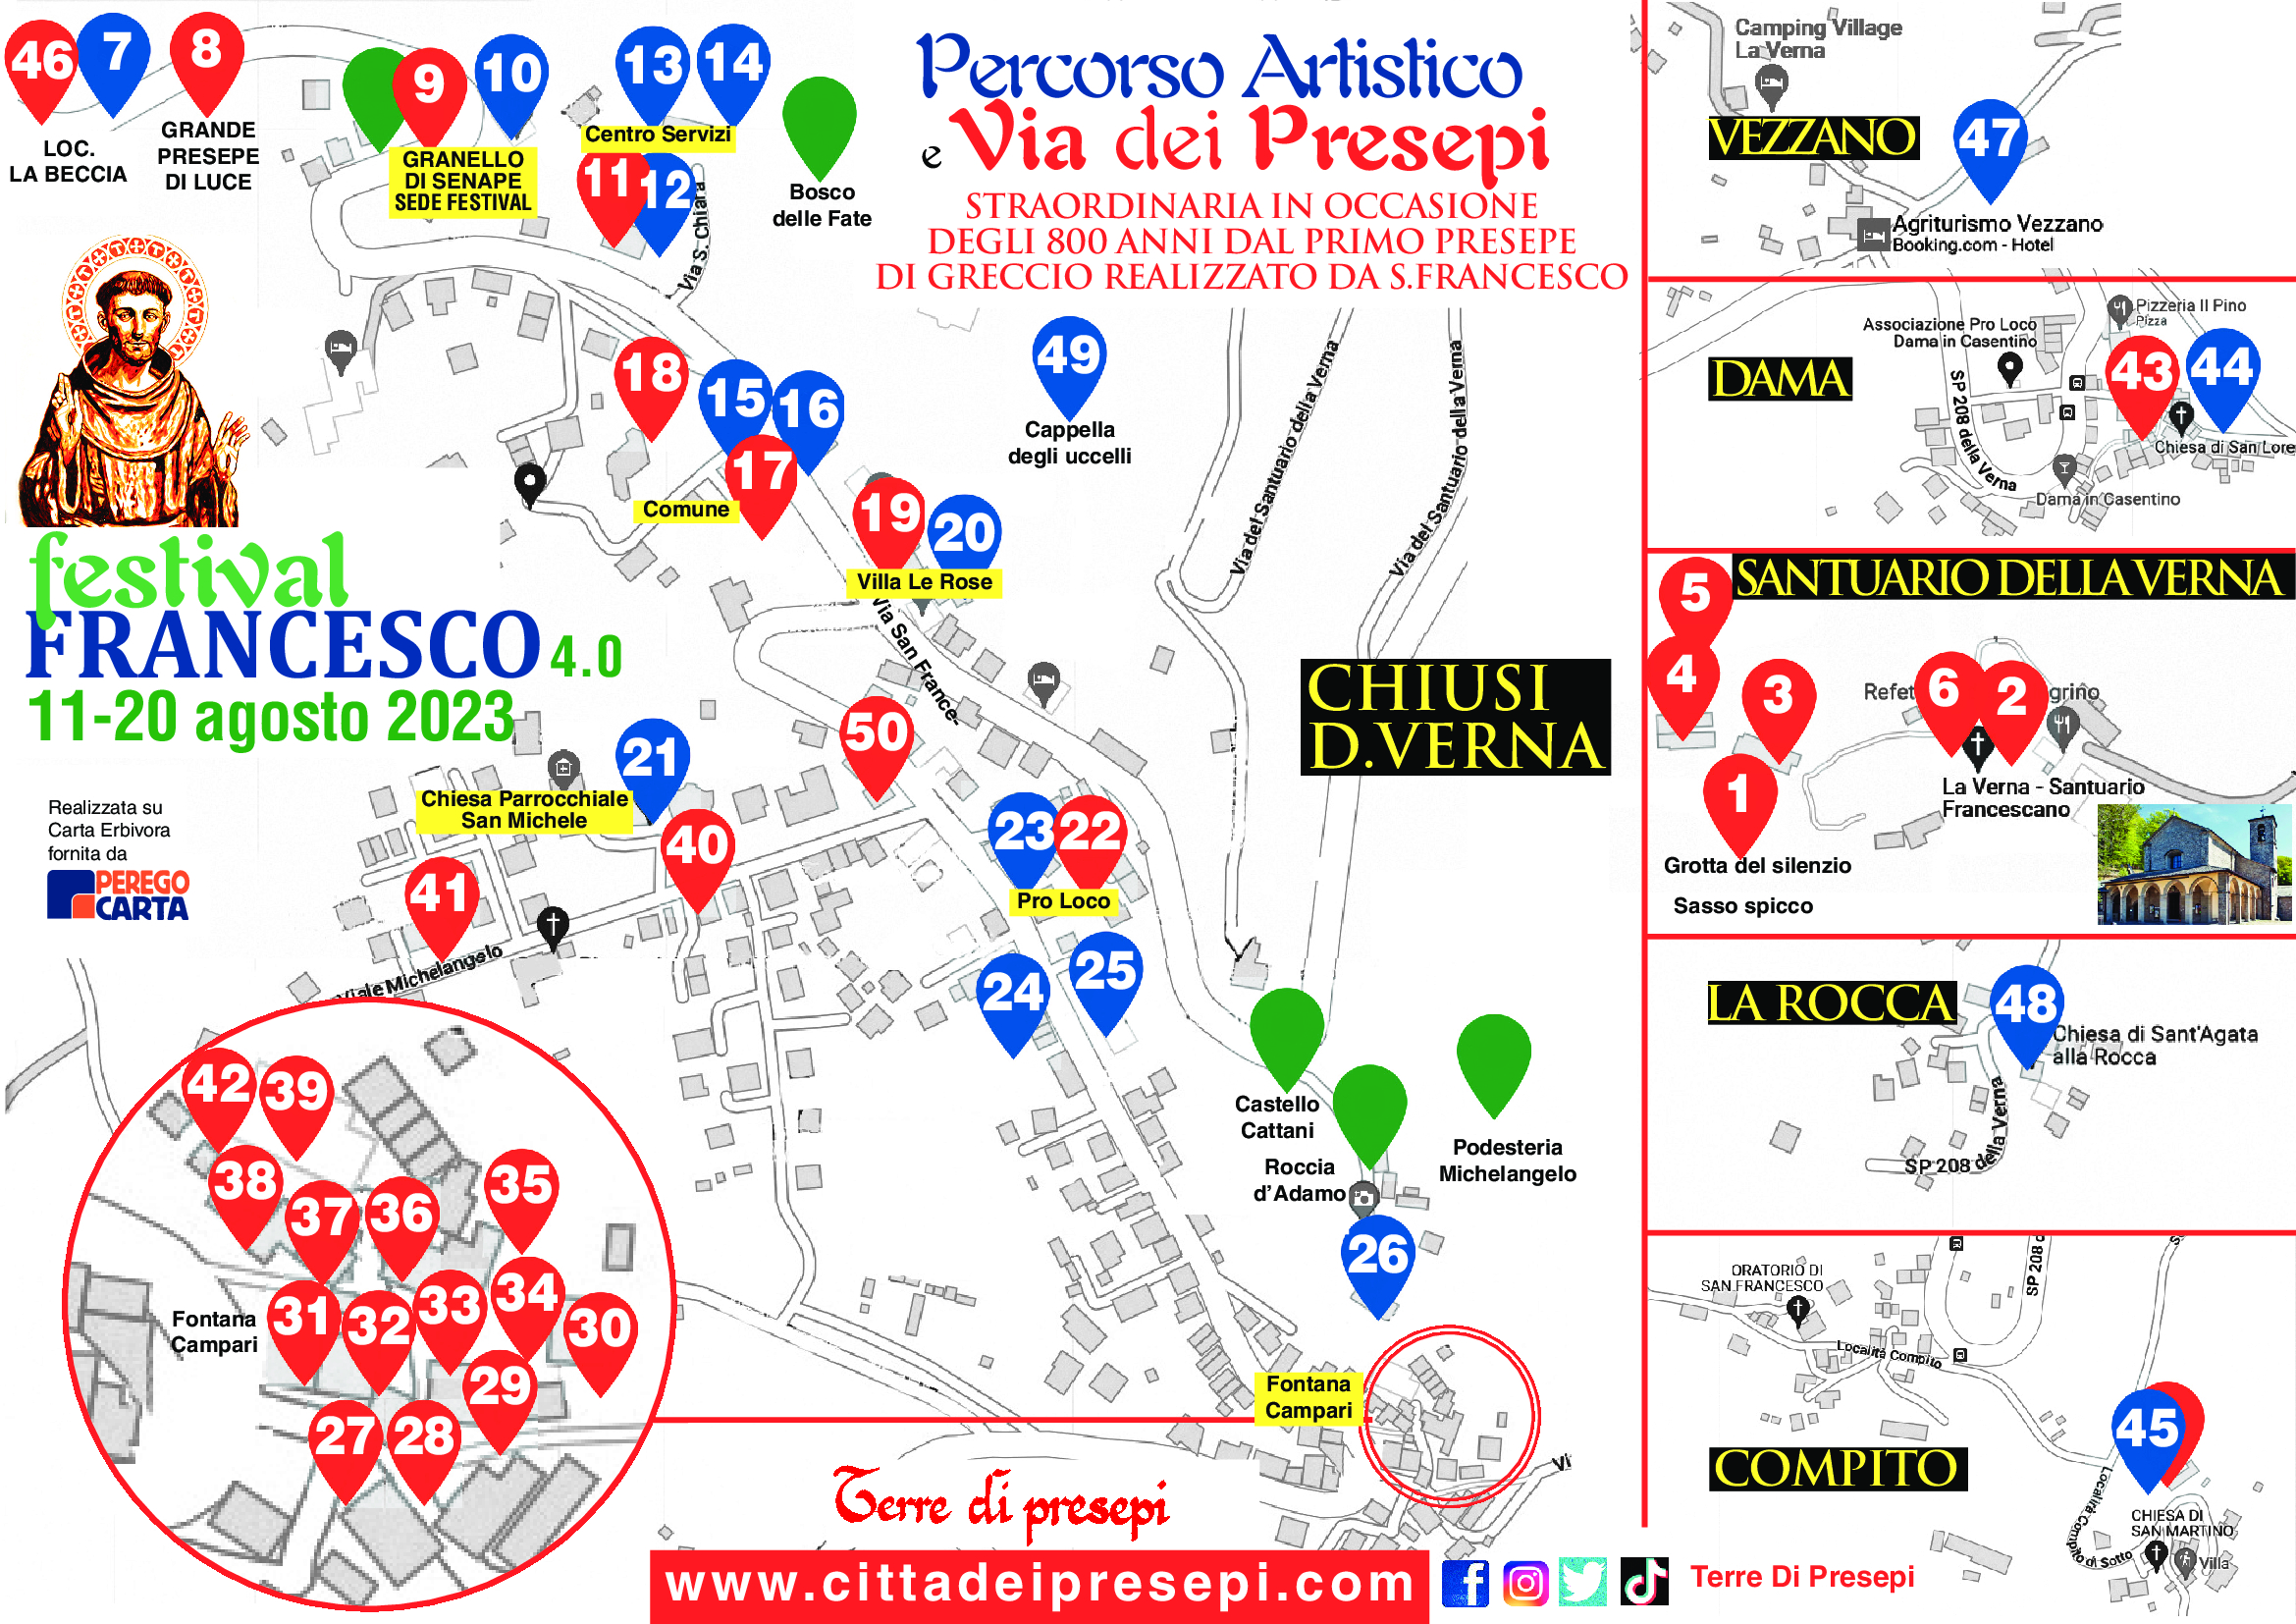 PERCORSO PRESEPI FESTIVAL FRANCESCO 4.0